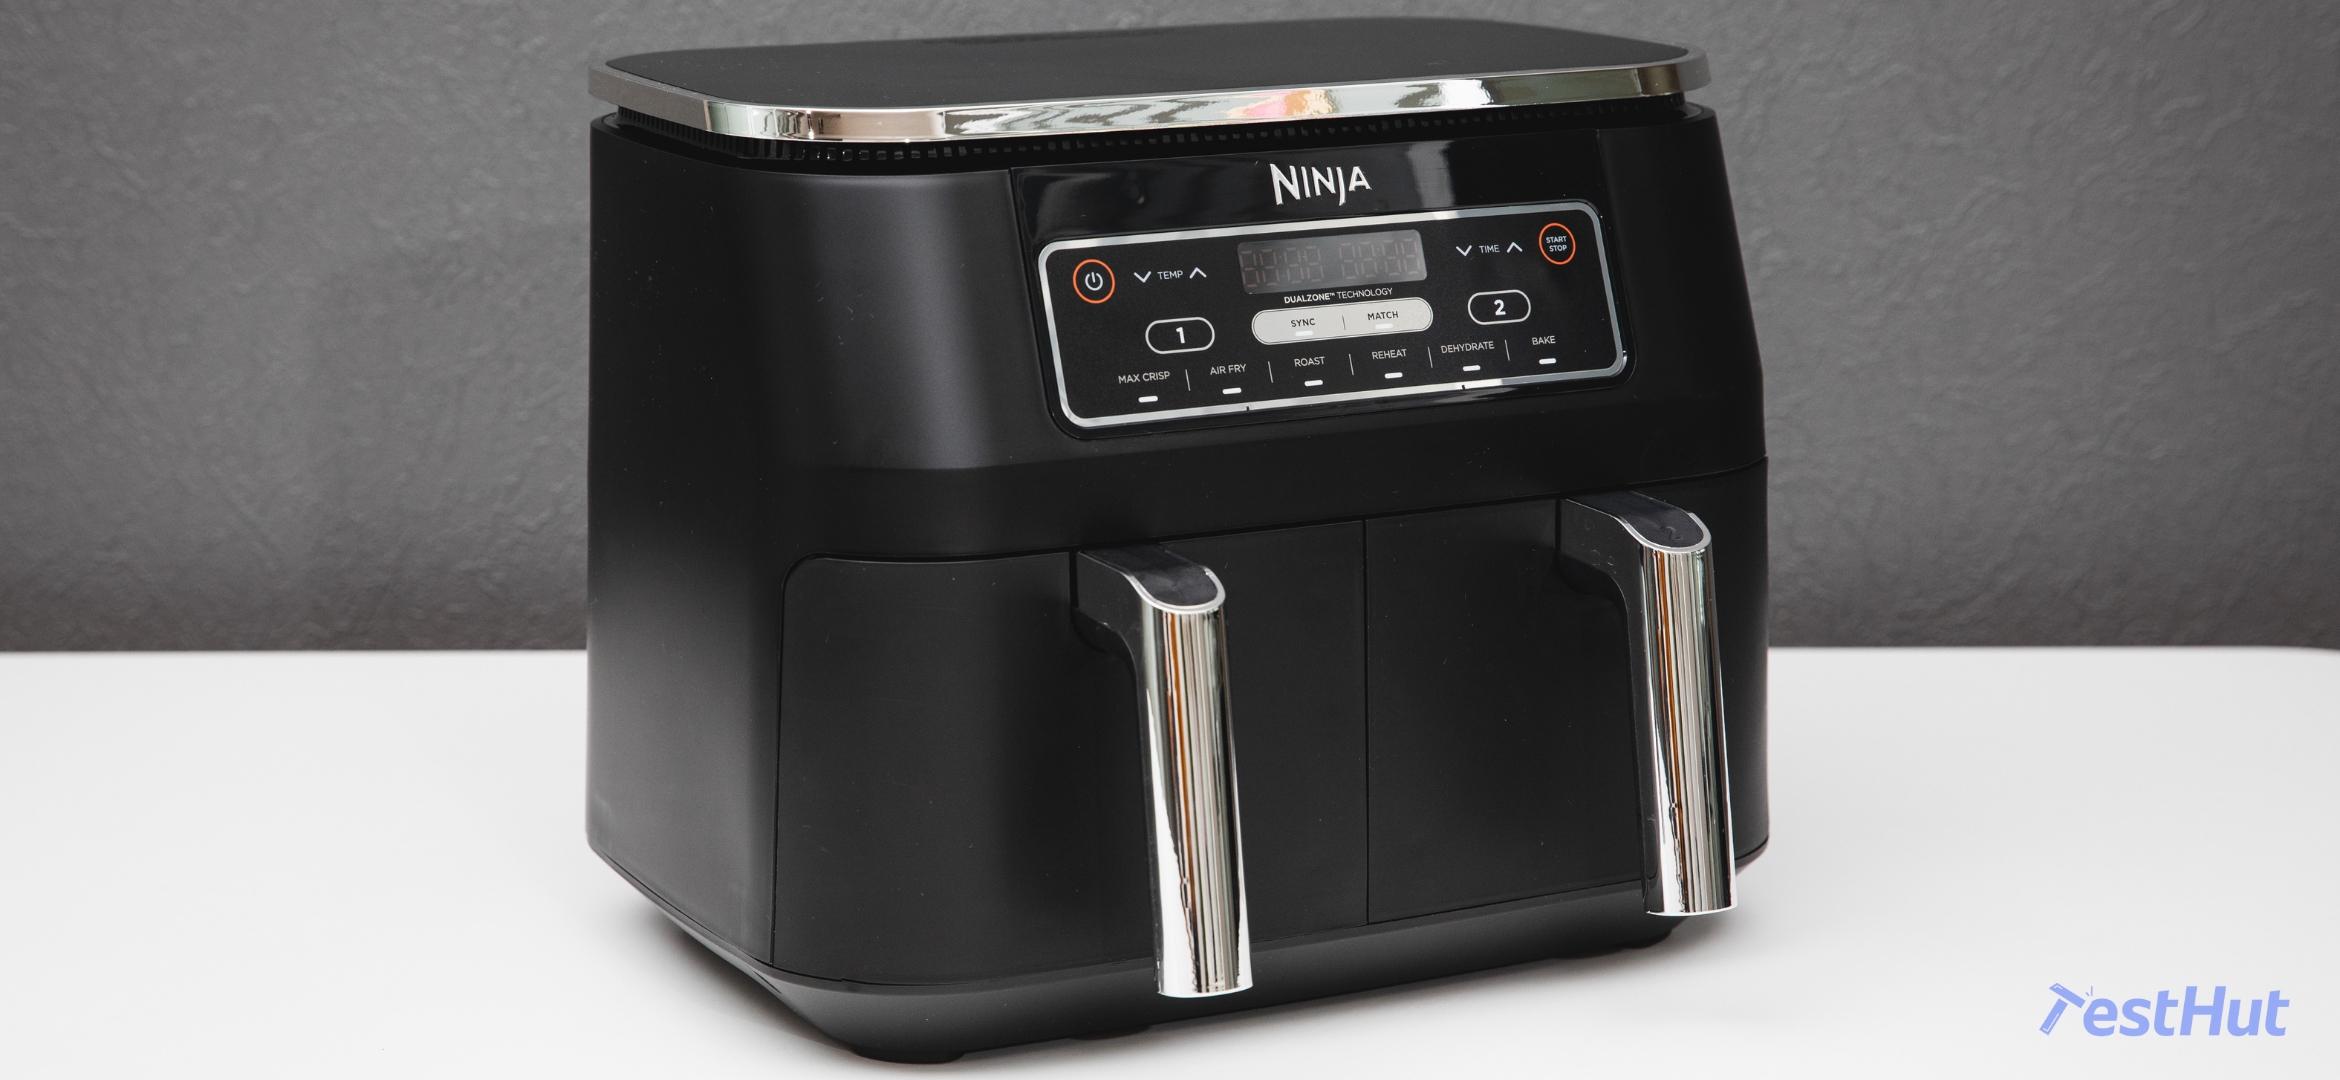 Ninja Foodi Dual Zone Air Fryer Review